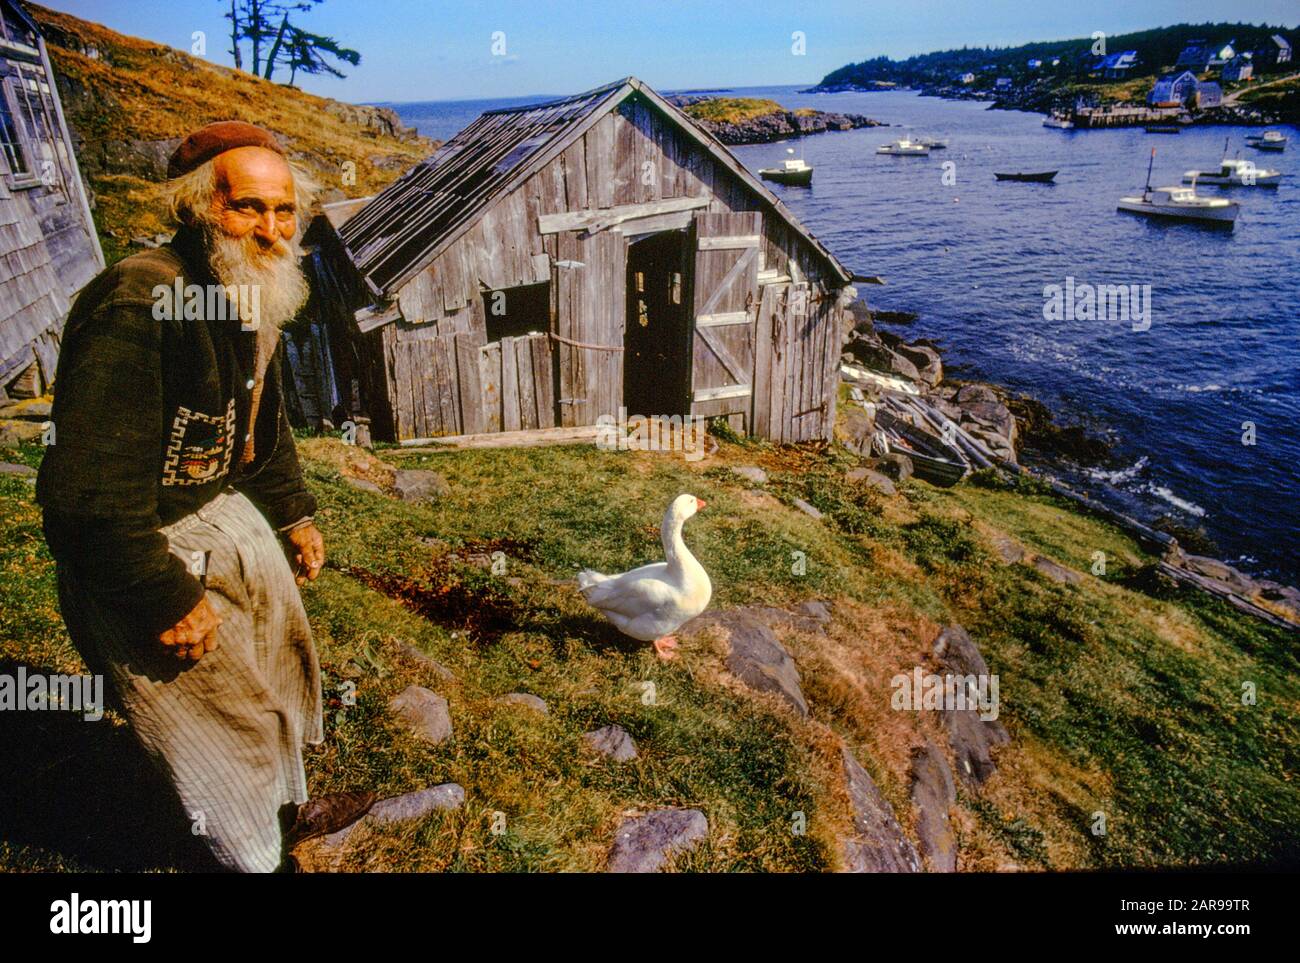 Begleitet von seiner Haustierente, einem Einsiedlerbewohner von Monhegan Island, LÄCHELT ICH bösartig am Ufer eines Einlasses, an dem Hummerboote vergraben werden. Stockfoto